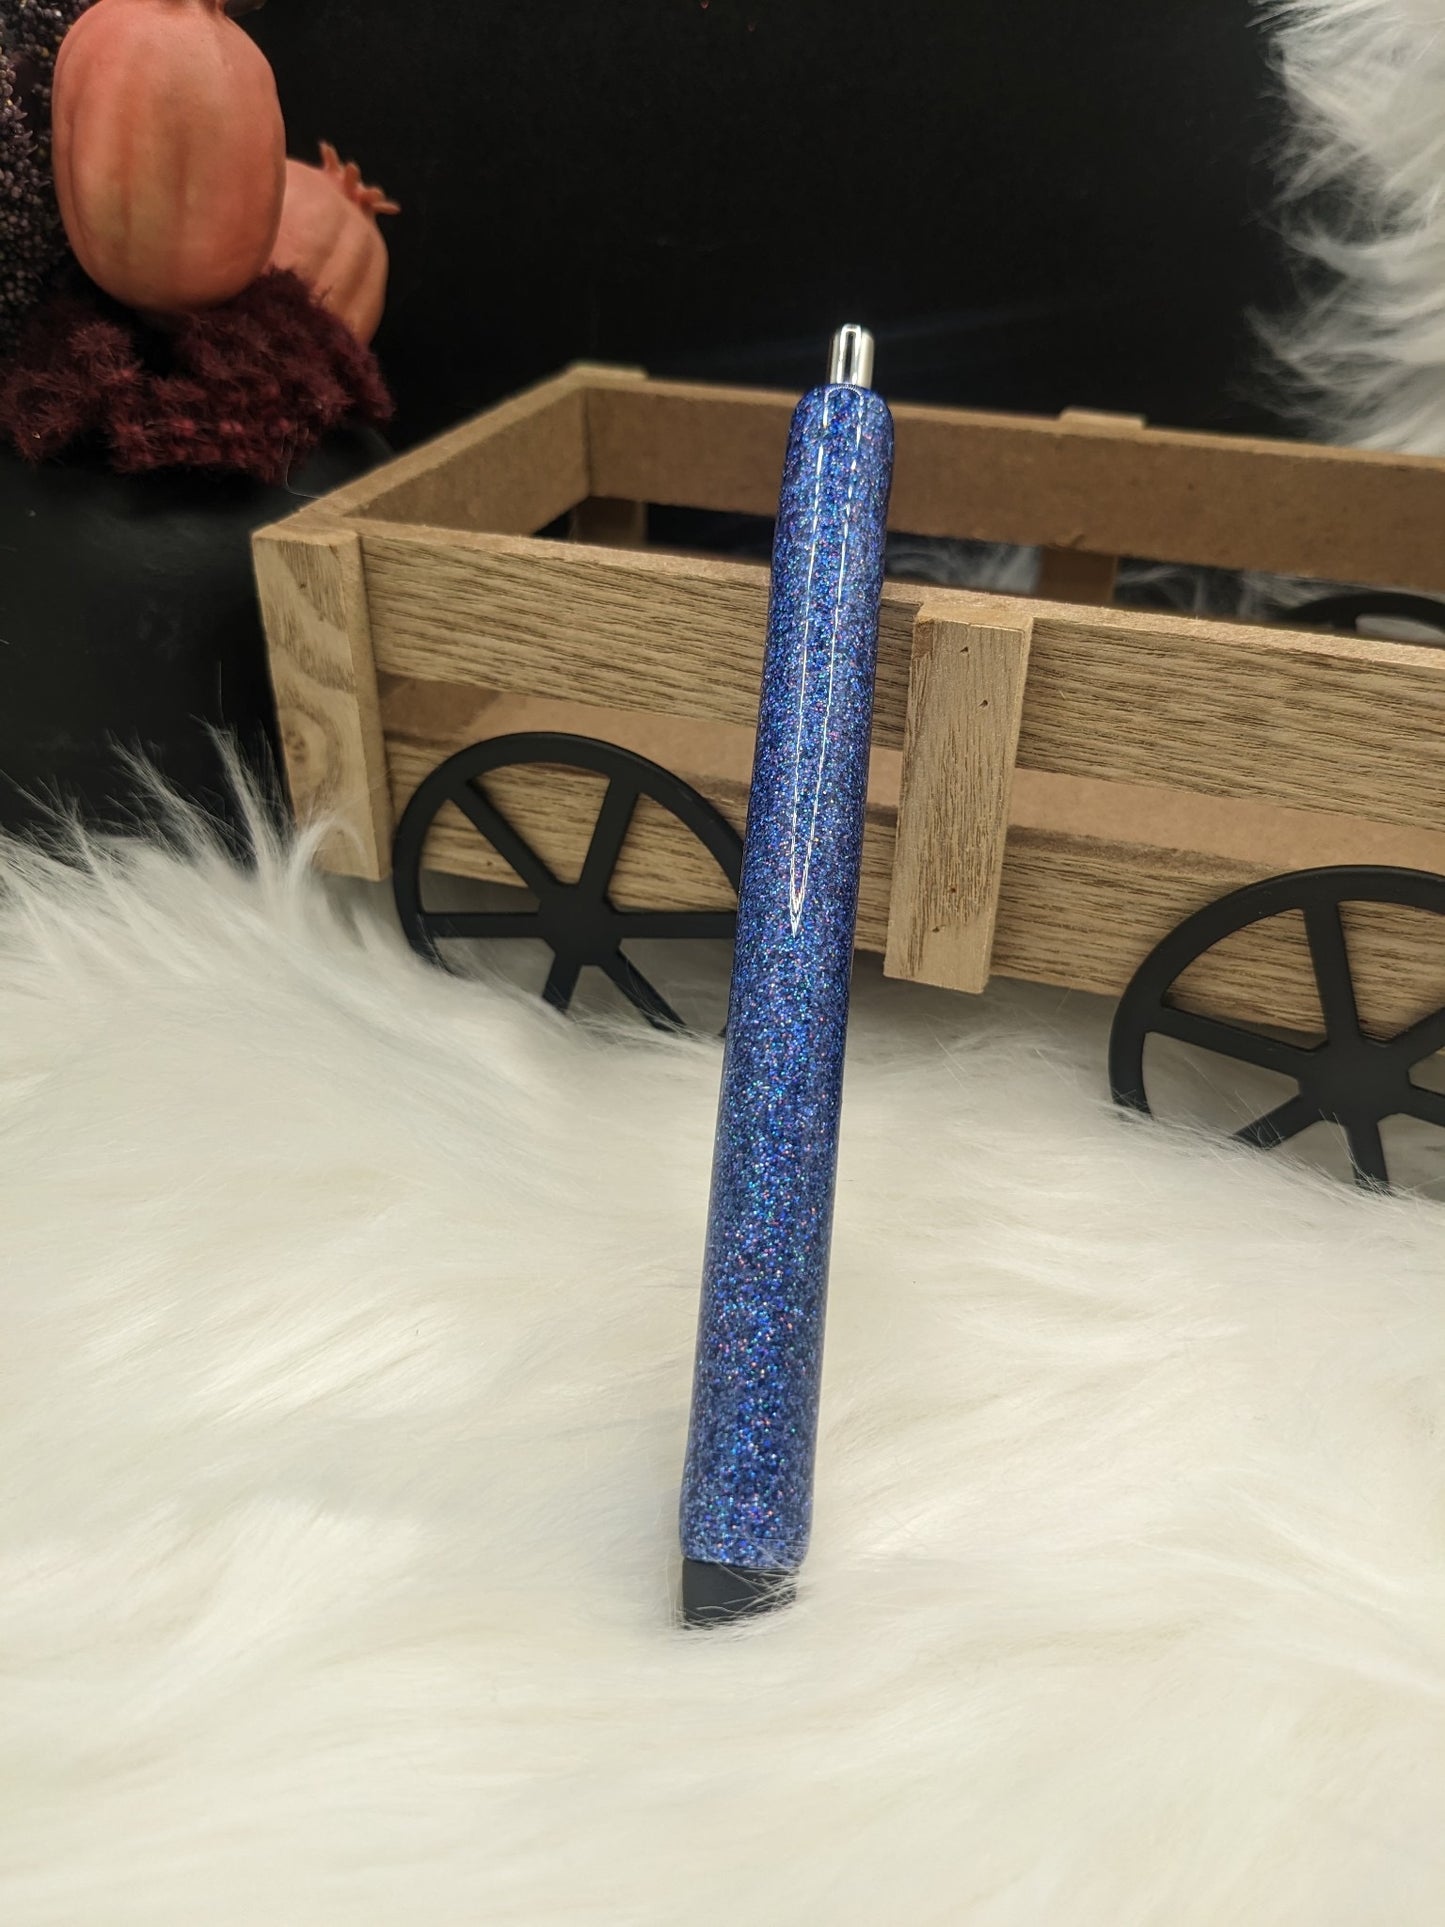 Glitter pen